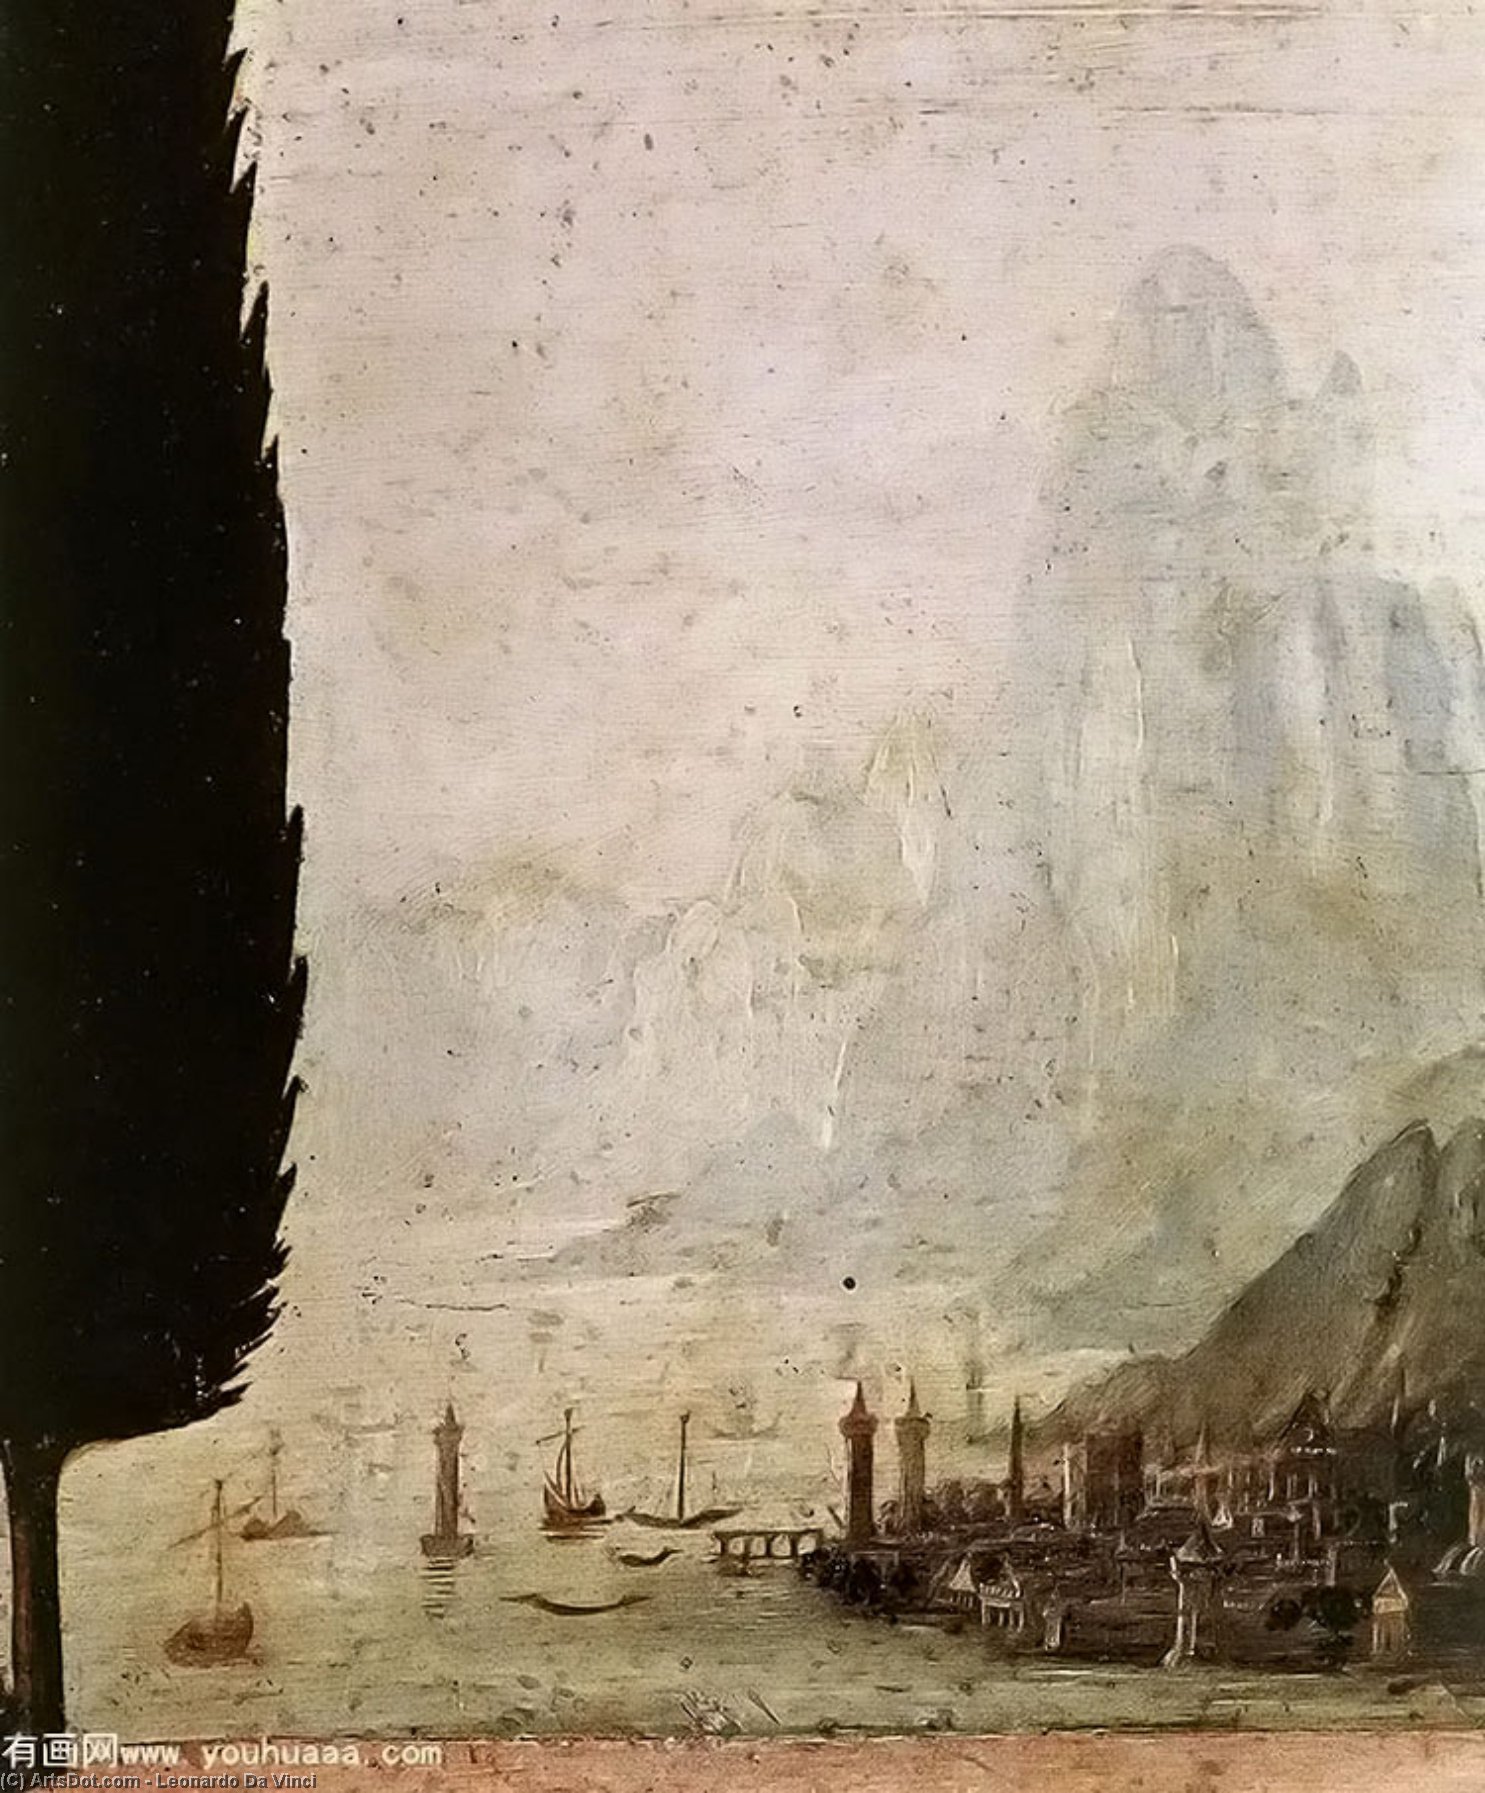 WikiOO.org - Encyclopedia of Fine Arts - Målning, konstverk Leonardo Da Vinci - Annunciation (detail) (10)